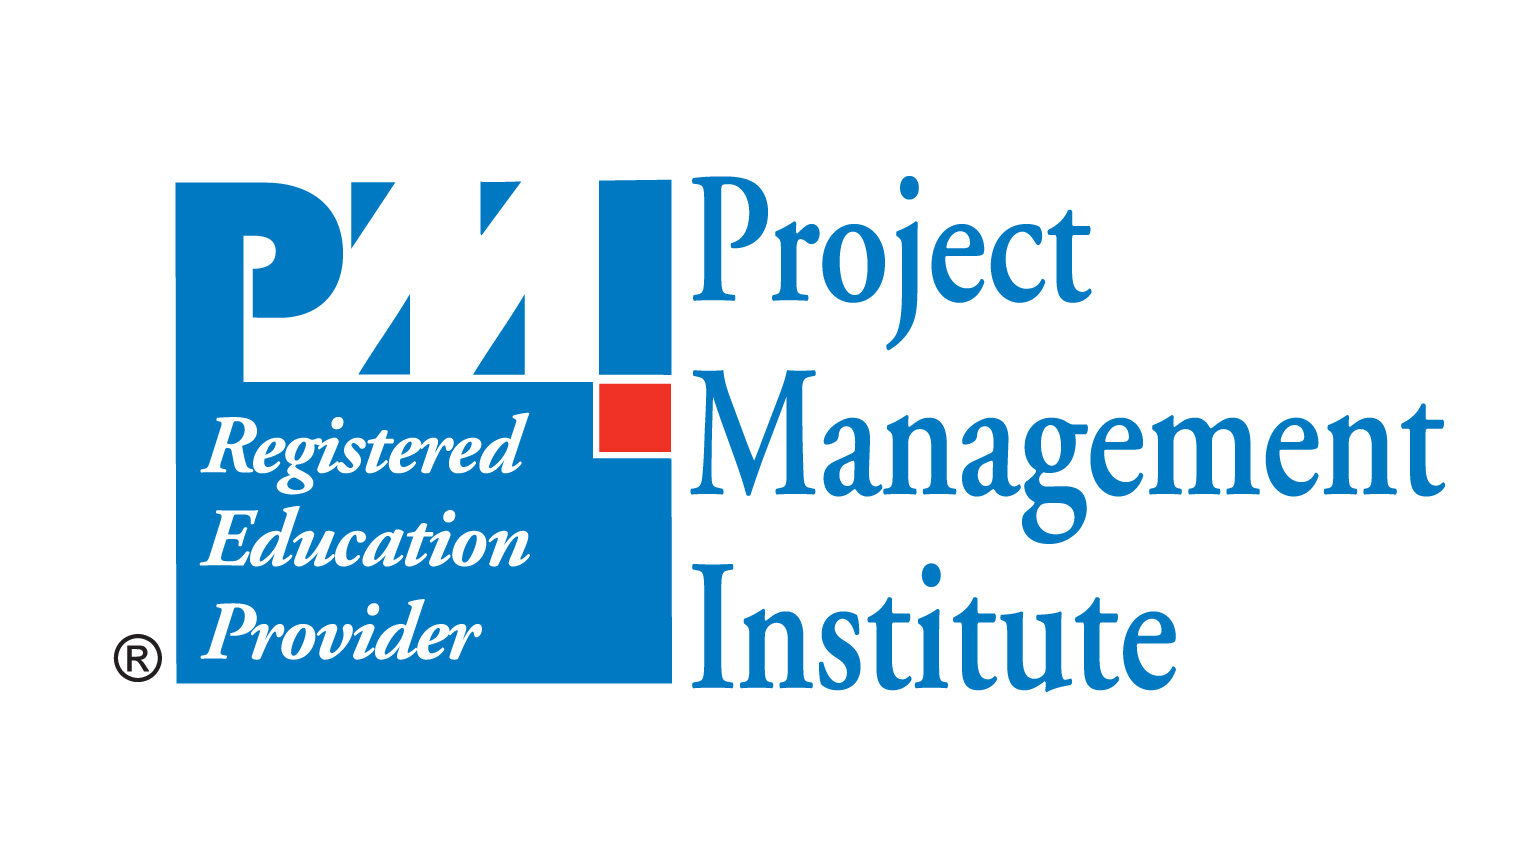 PMI Registered Education Provider (R.E.P.)